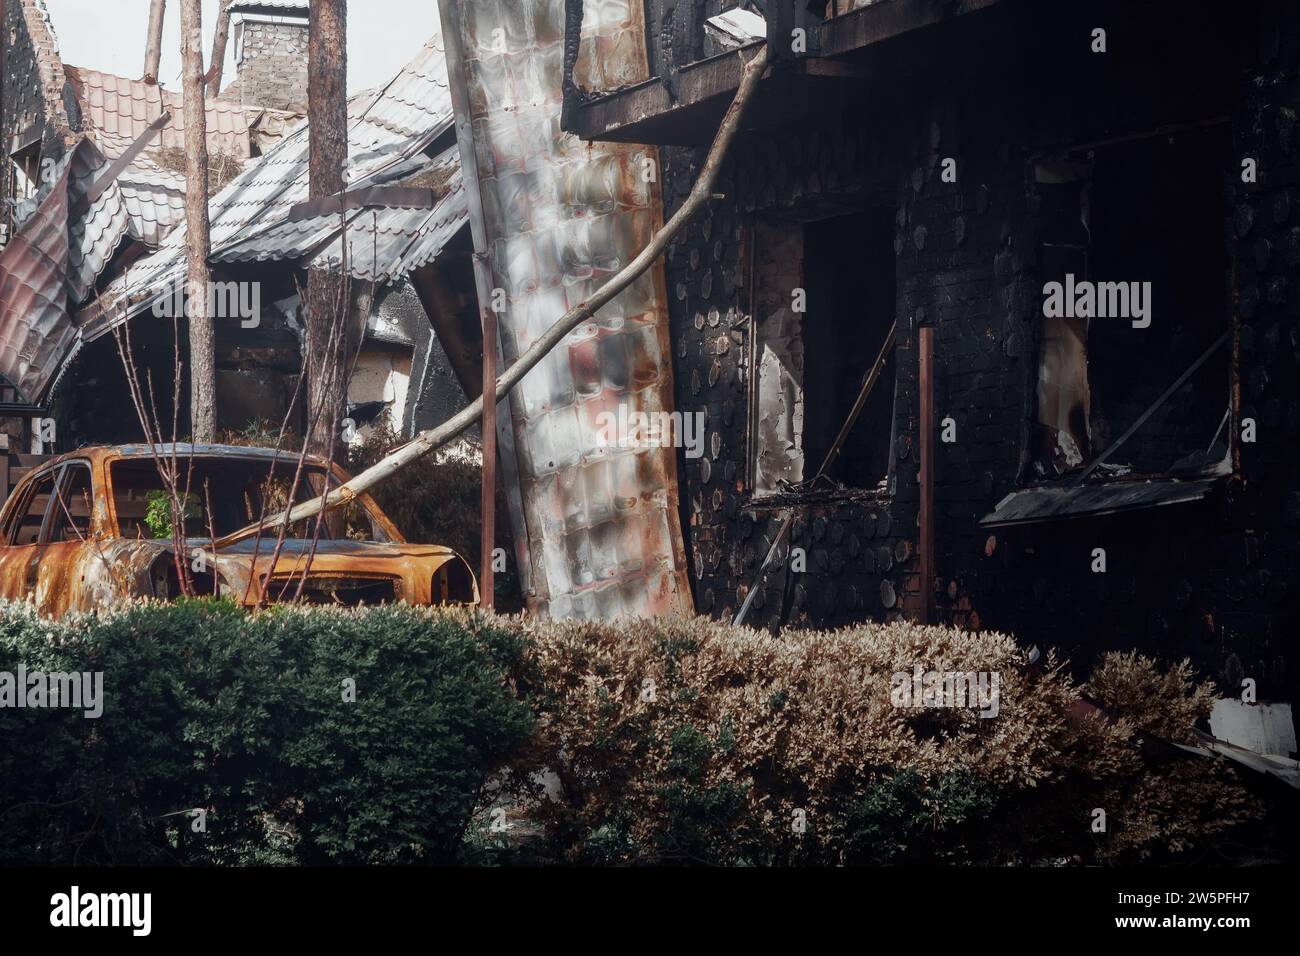 Irpin, Region Kiew, 2022. Zerstörtes Auto im Hof eines Hauses. Die Folgen des Raketenfeuers während des russischen Krieges gegen die Ukraine. Stockfoto